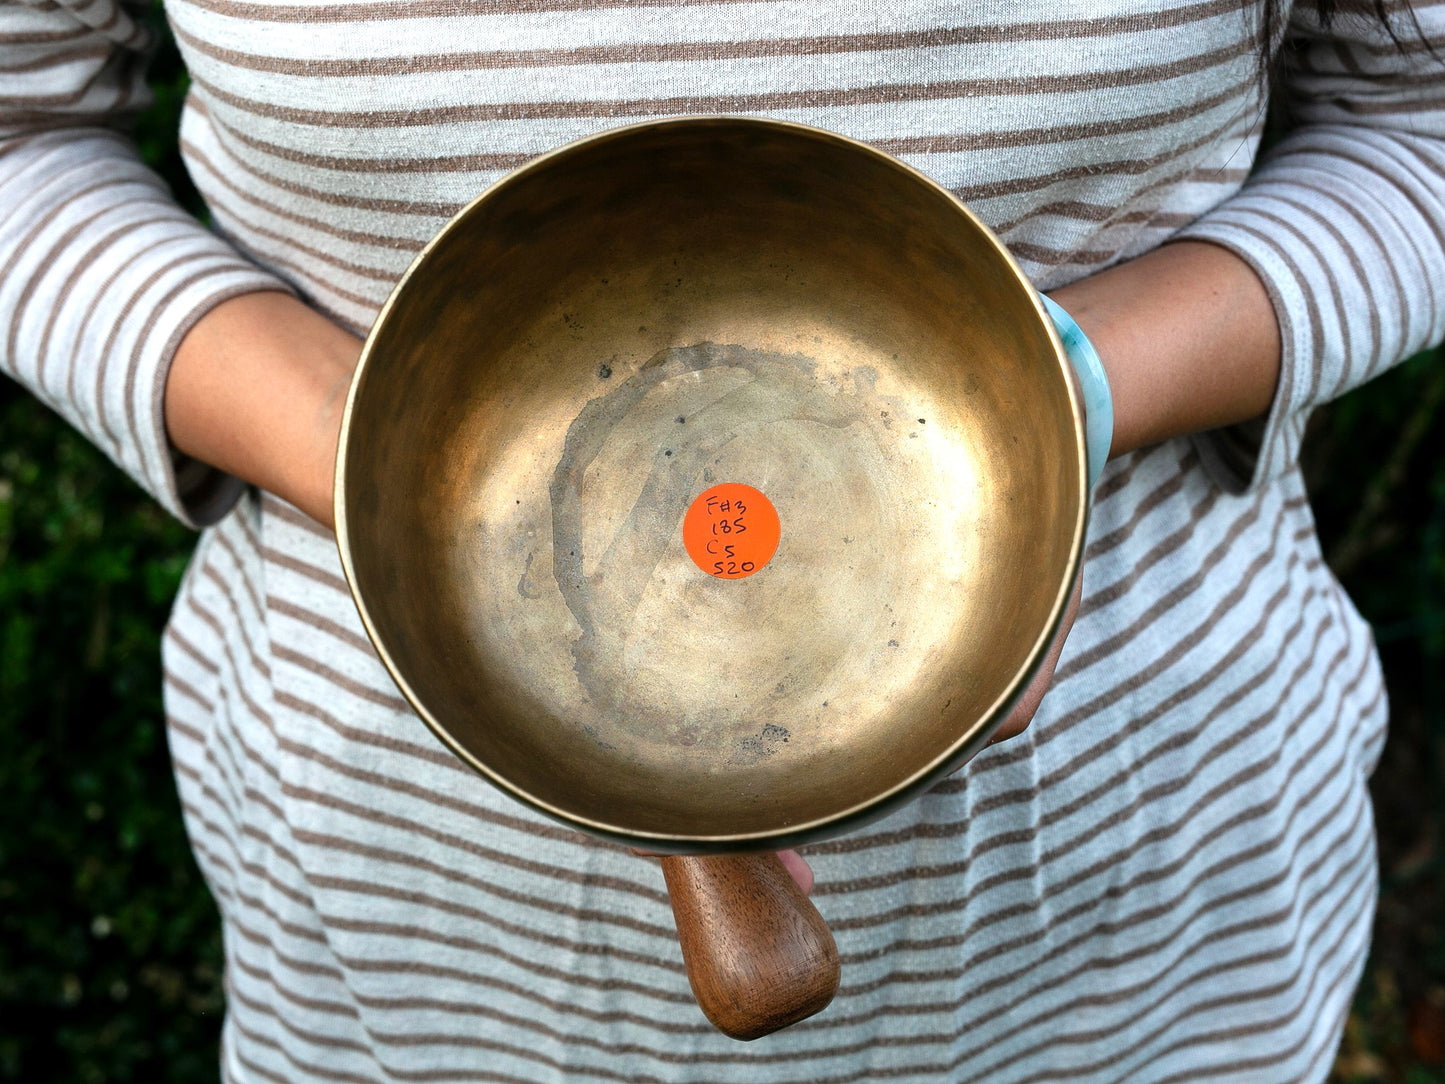 Old 'Tara' Singing Bowl - Base Note F#3 (185 Hz)